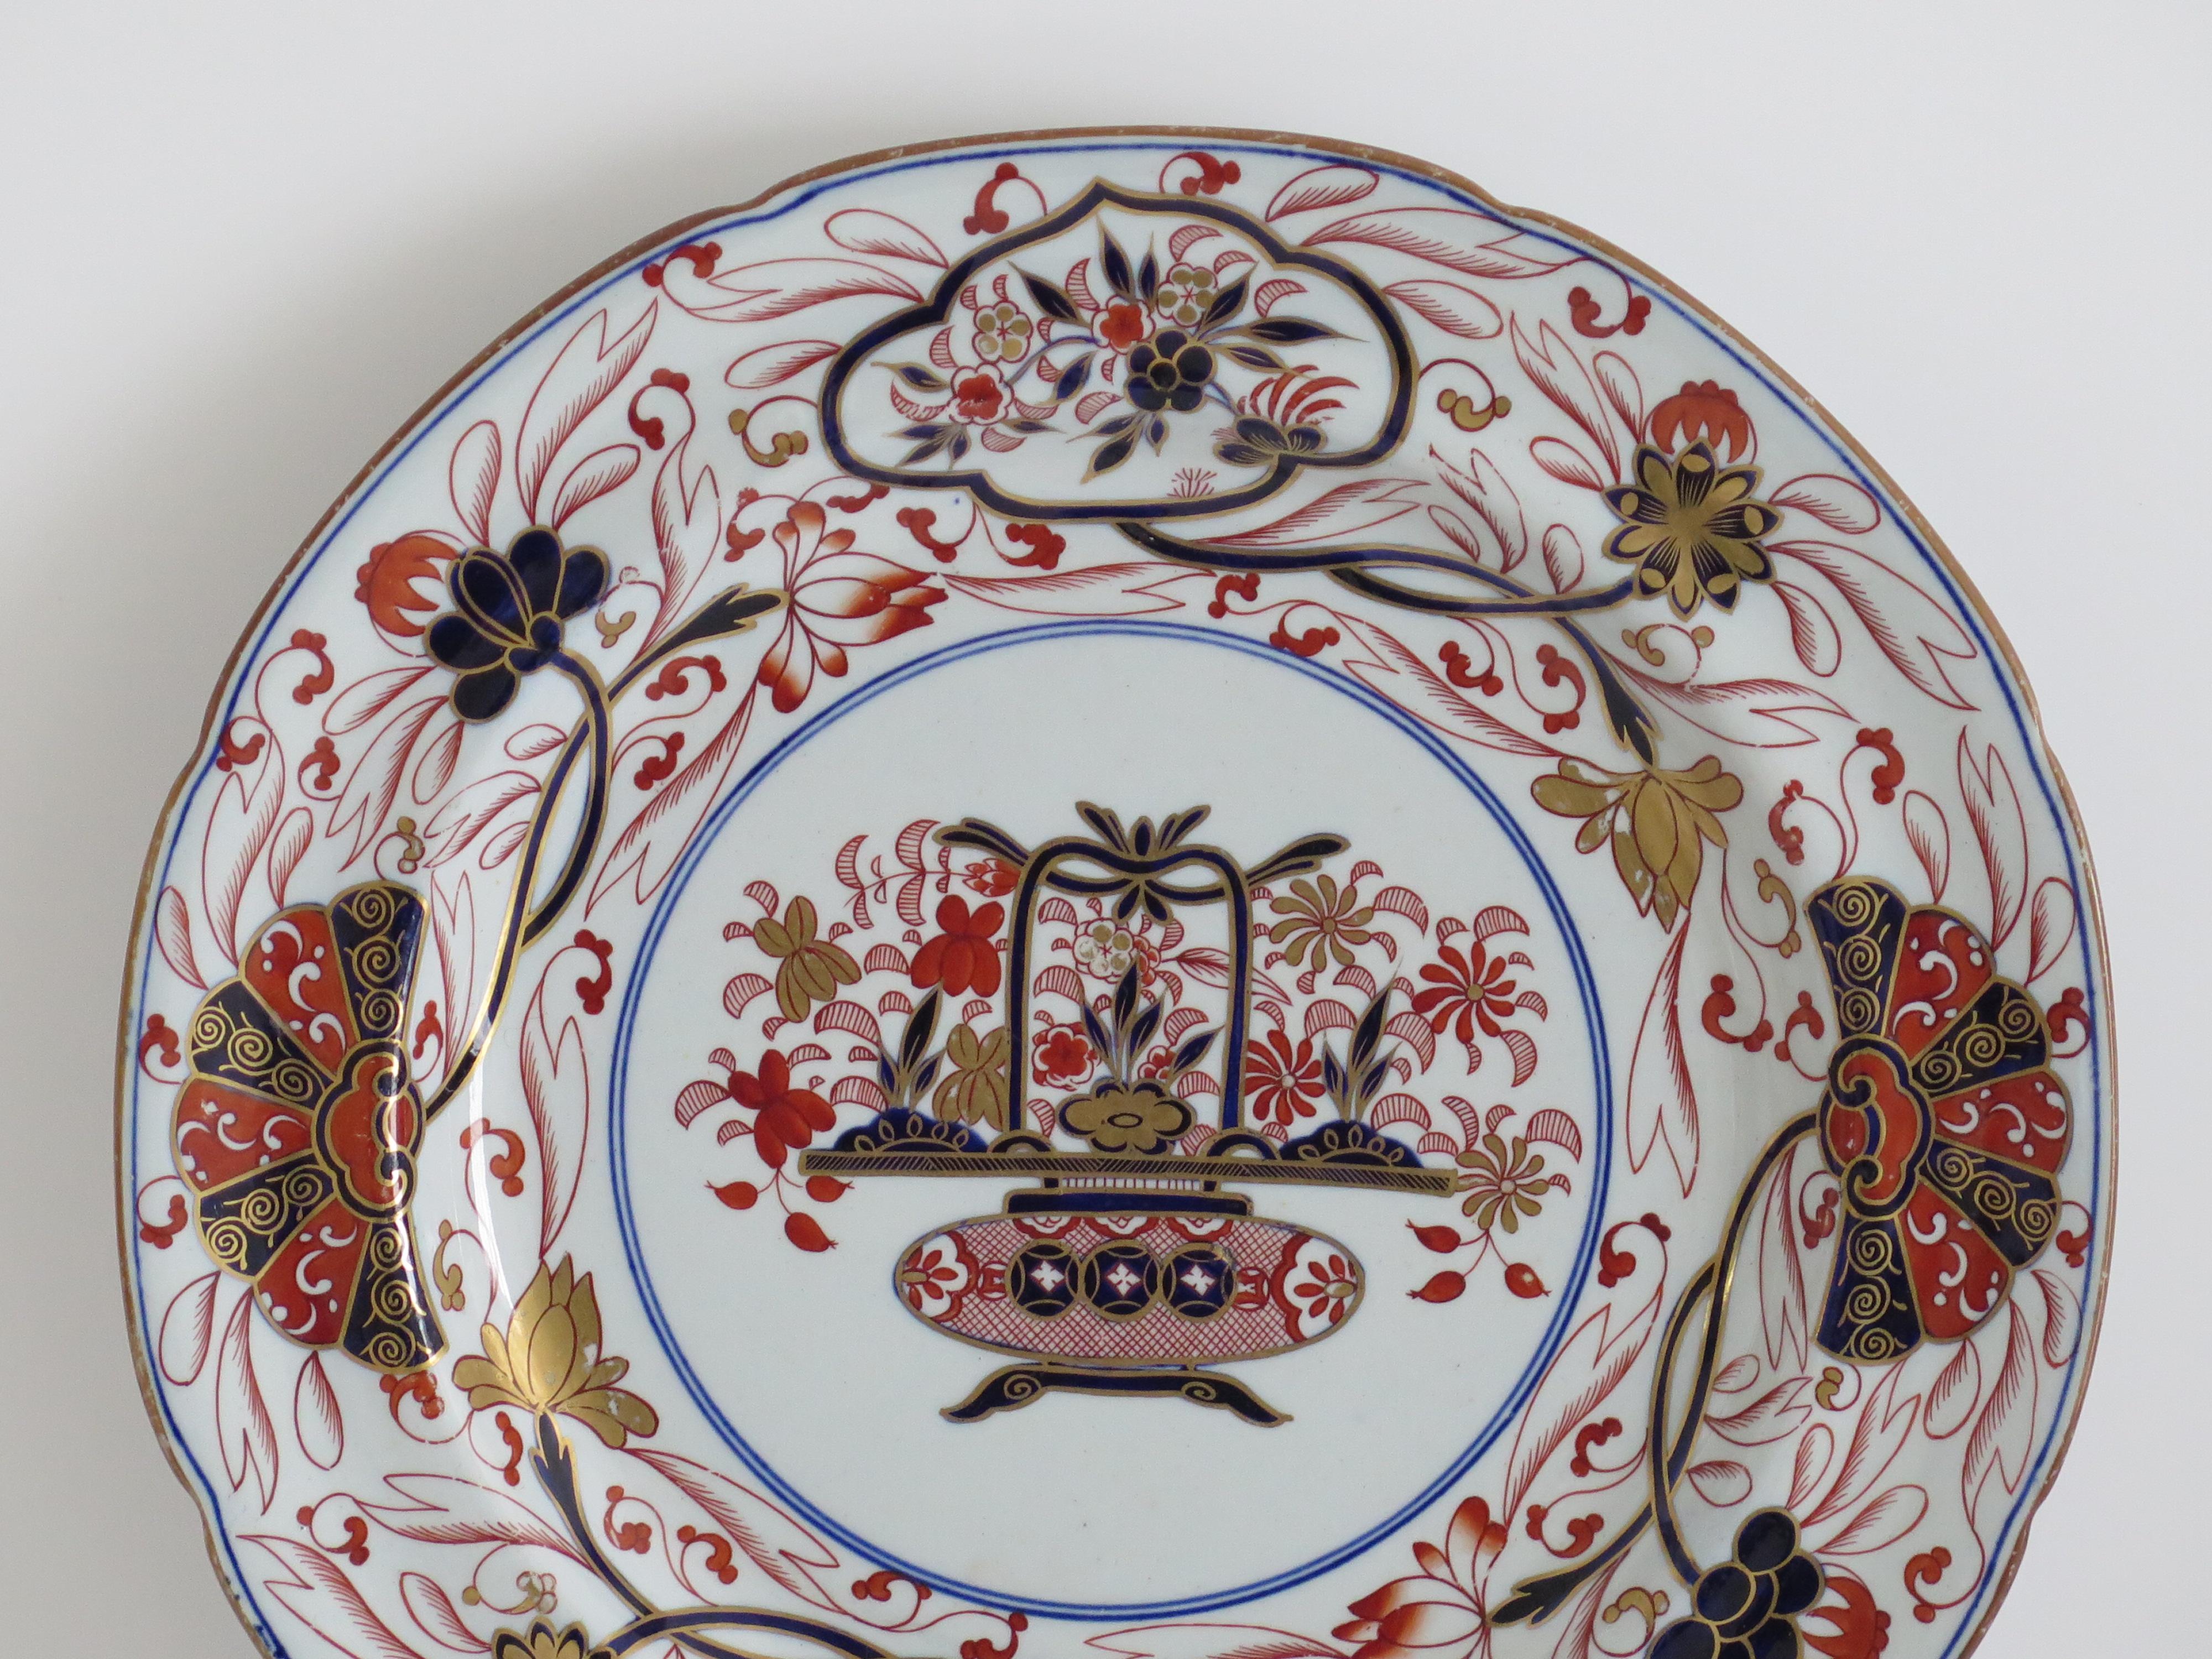 Il s'agit d'une très belle assiette à dîner peinte à la main, produite par l'usine Spode à la fin de la période géorgienne, vers 1820.

Il s'agit du modèle numéro 2283, dont le décor de chinoiserie a été soigneusement et magnifiquement peint à la